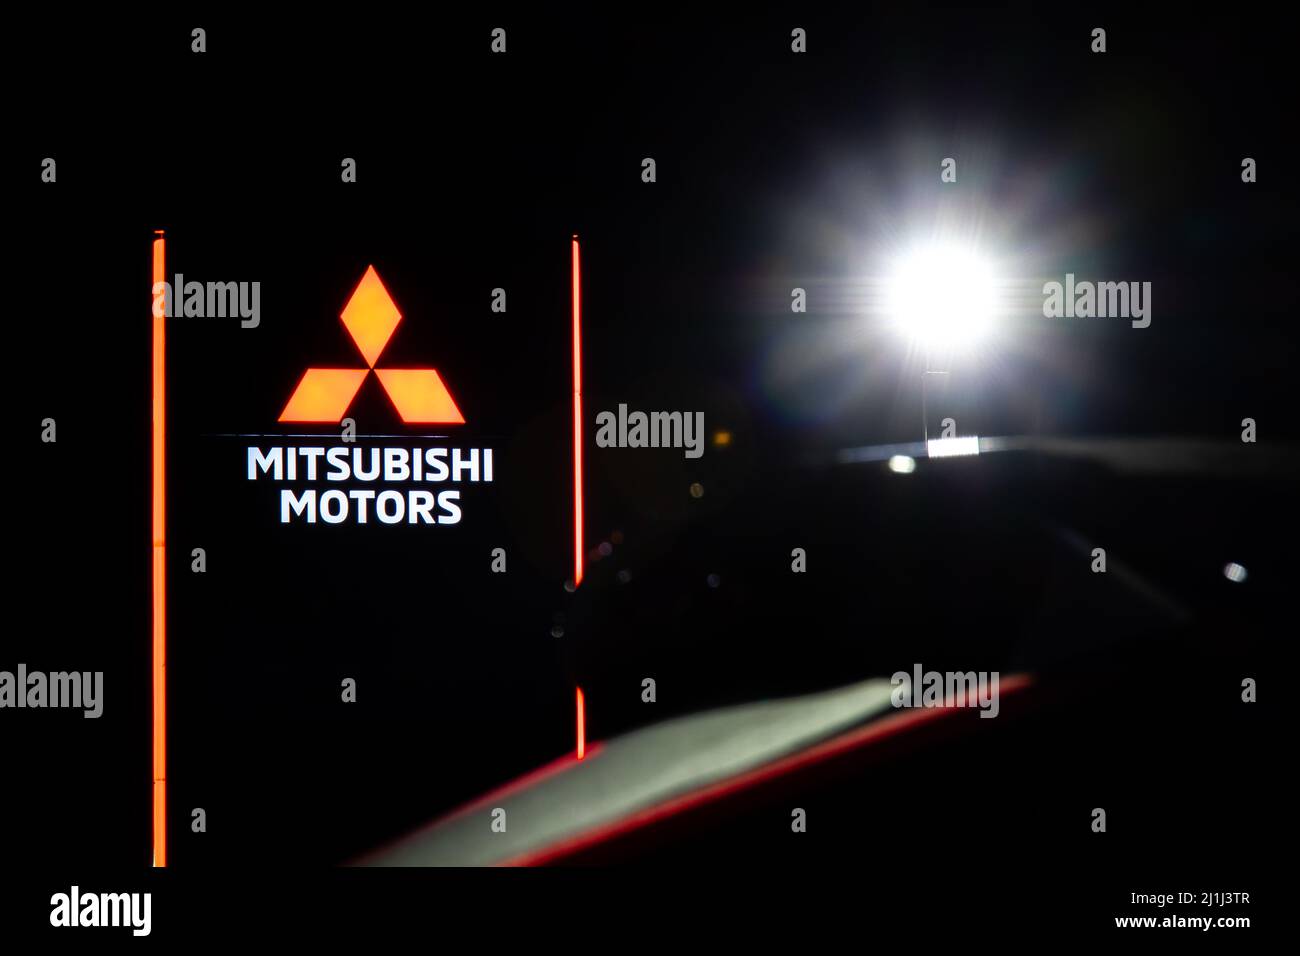 Le logo Mitsubishi Motors est illuminé sur le panneau principal d'un concessionnaire Mitsubishi nouvellement construit la nuit. Banque D'Images